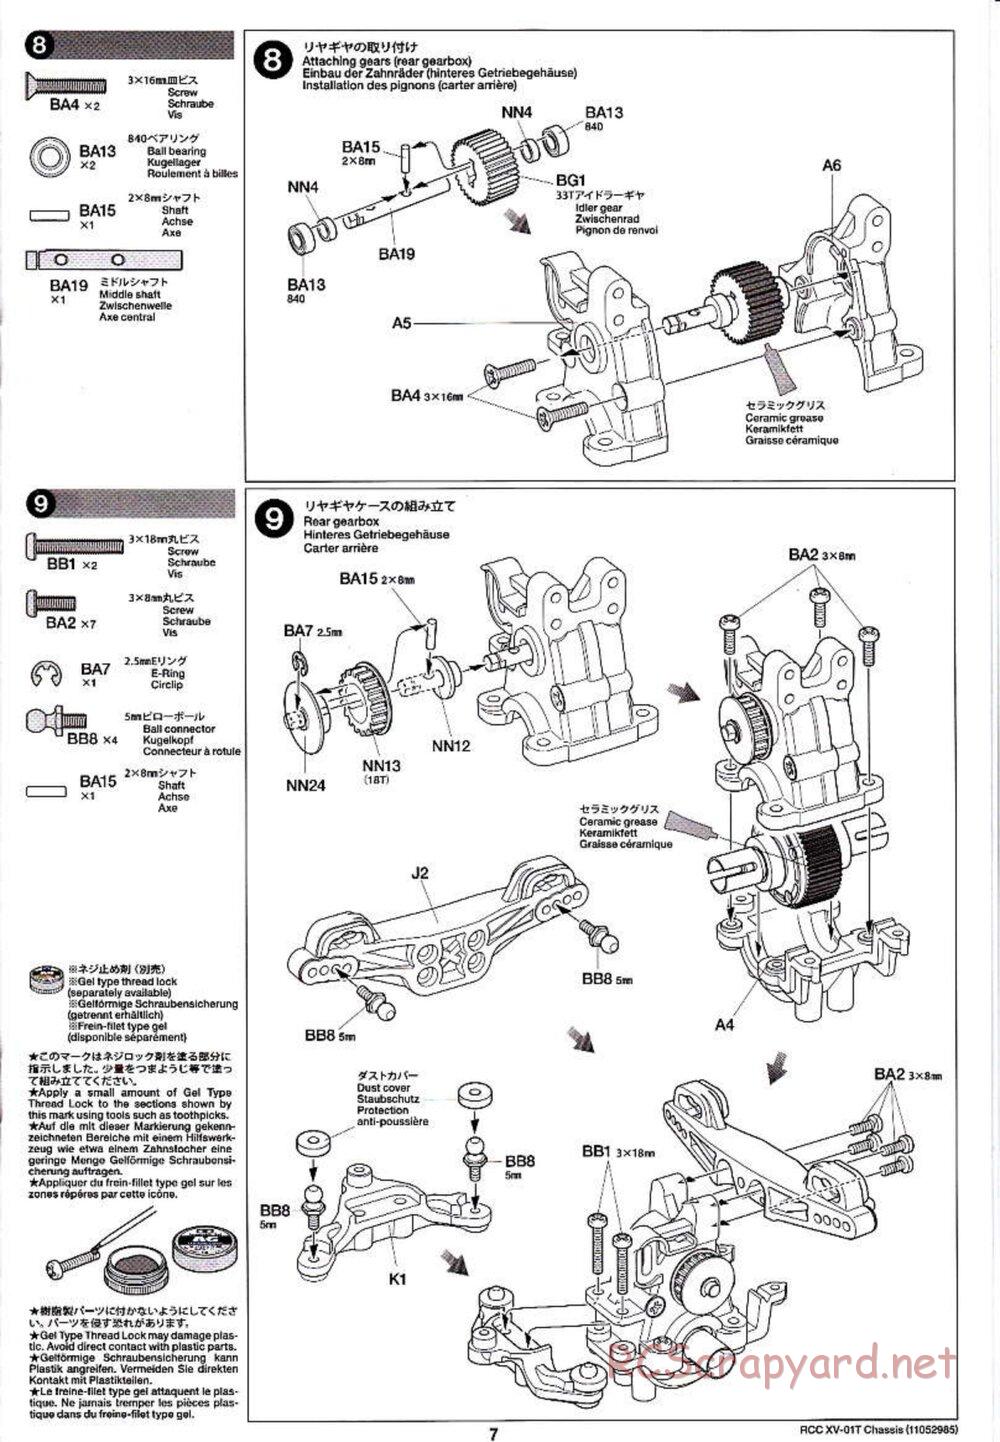 Tamiya - XV-01T Chassis - Manual - Page 7